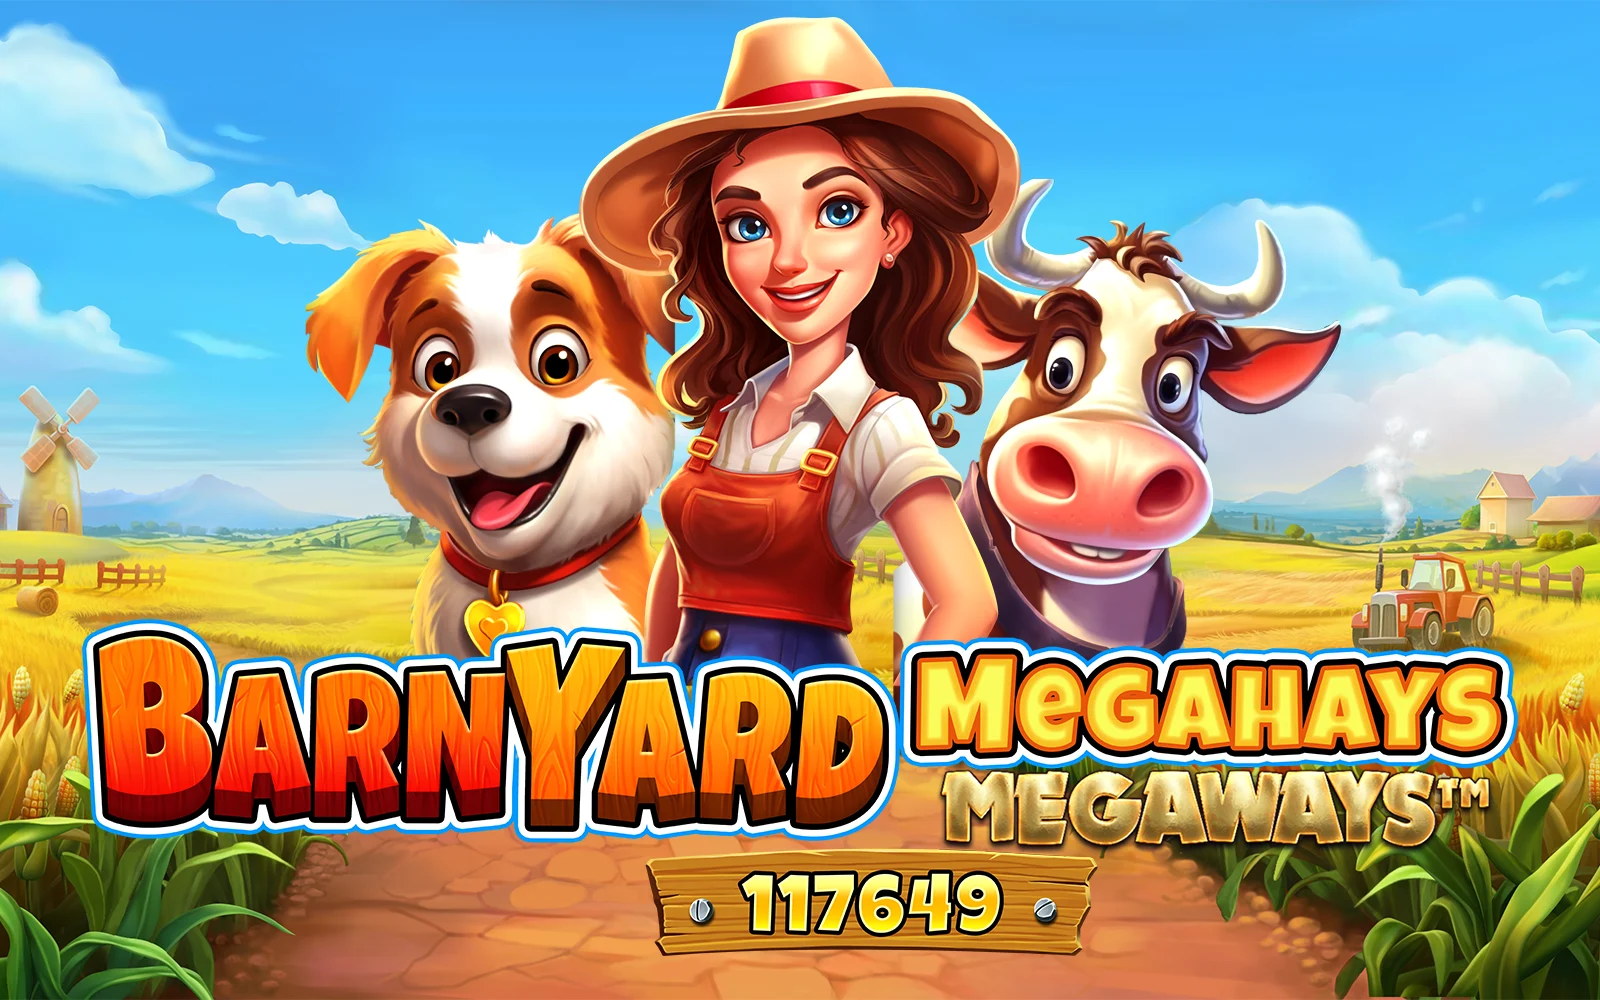 Zagraj w Barnyard Megahays Megaways™ w kasynie online Starcasino.be